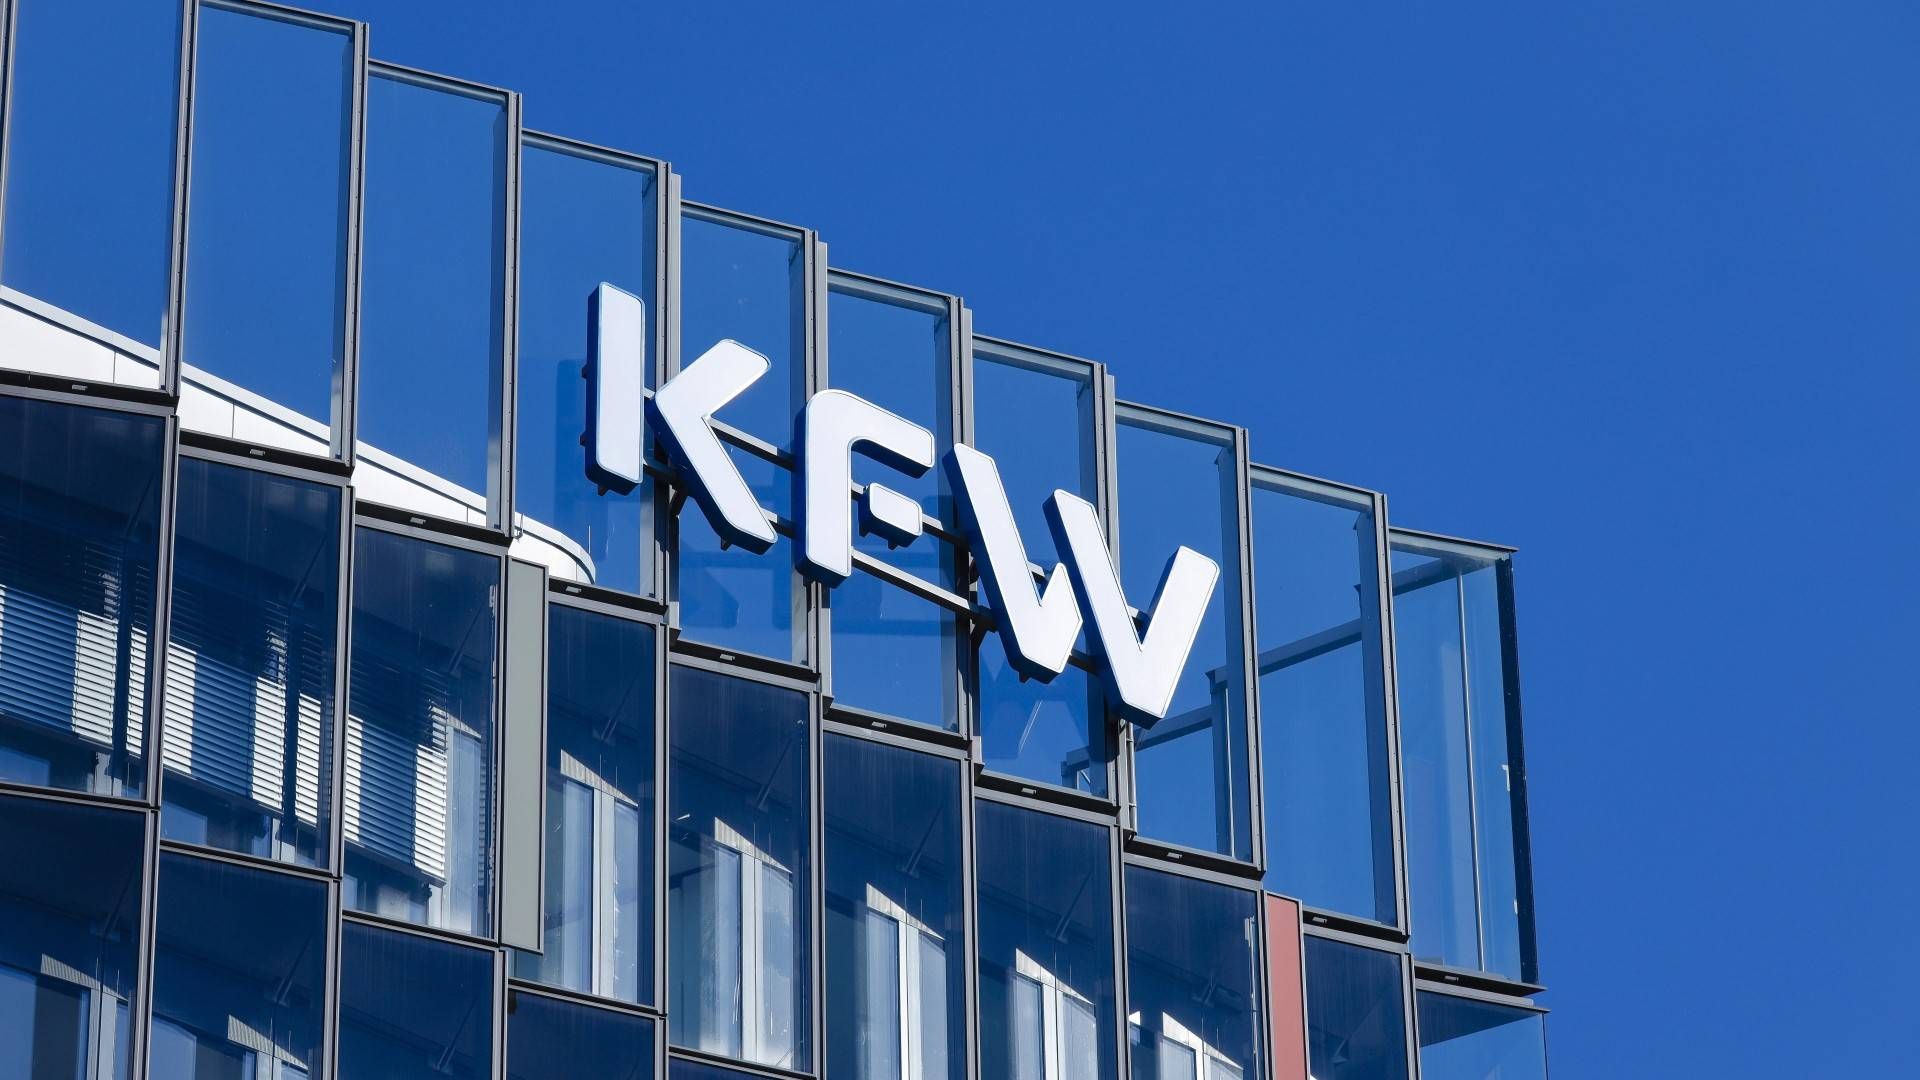 Fassade der KfW in Frankfurt am Main | Foto: picture alliance / imageBROKER | Rupert Oberhäuser